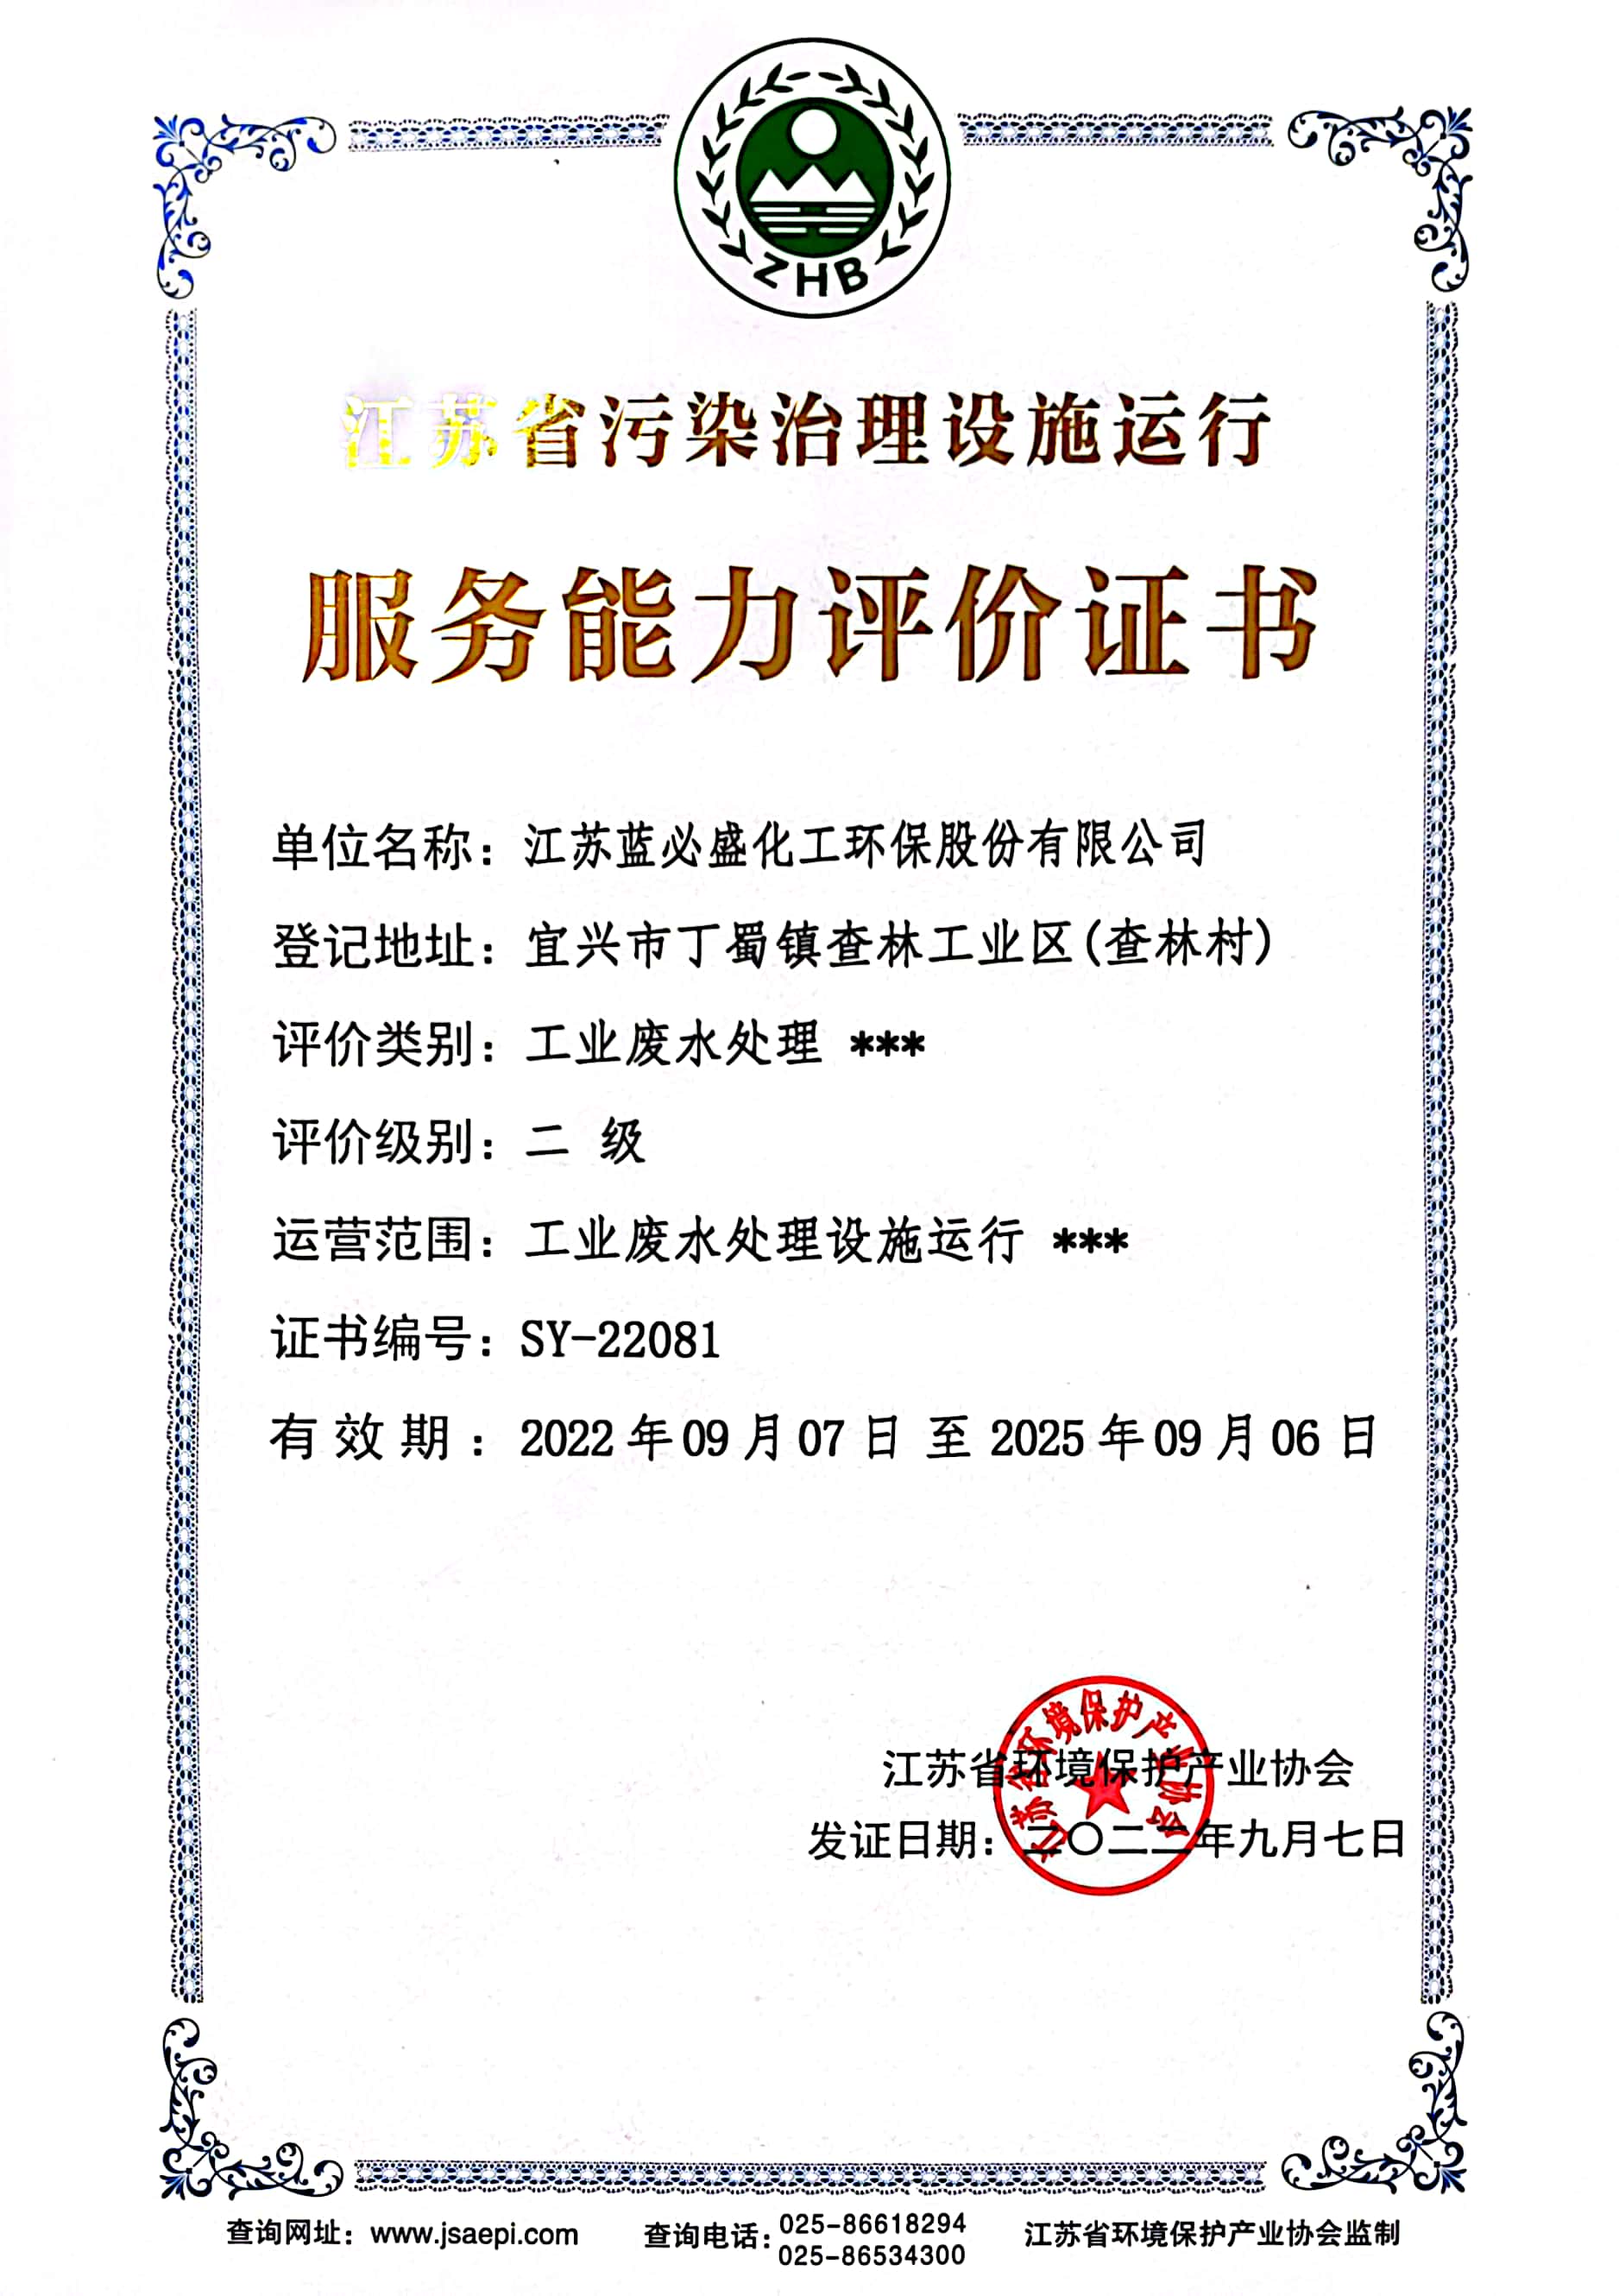 8、江苏省污染治理设施运行服务能力评价（工业废水处理 二级）正本